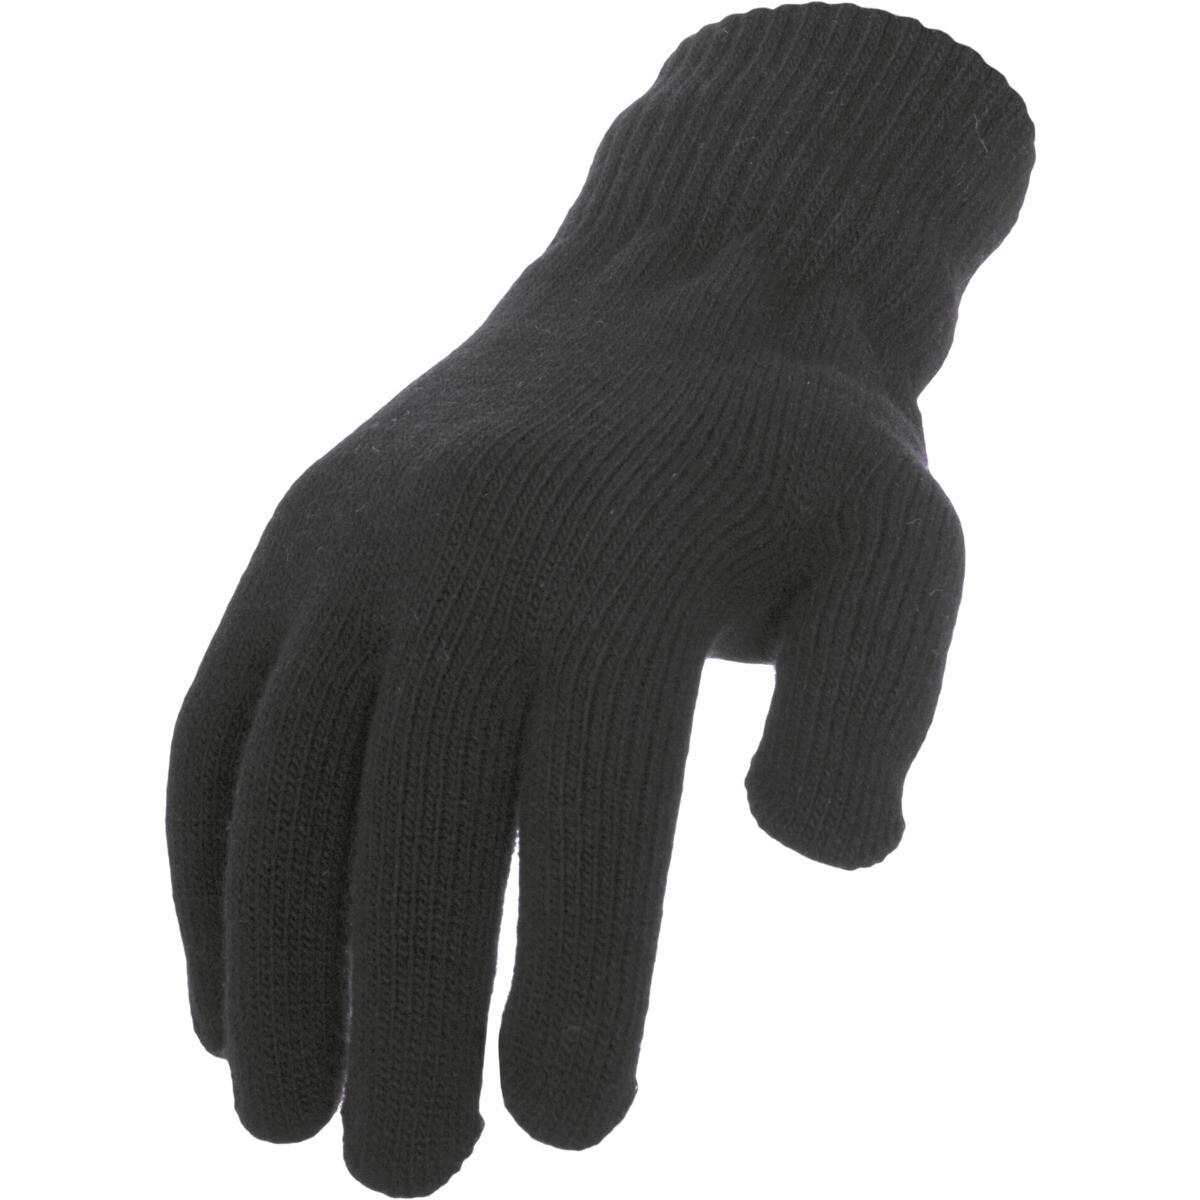 Knitted Gloves, Grösse: S/M